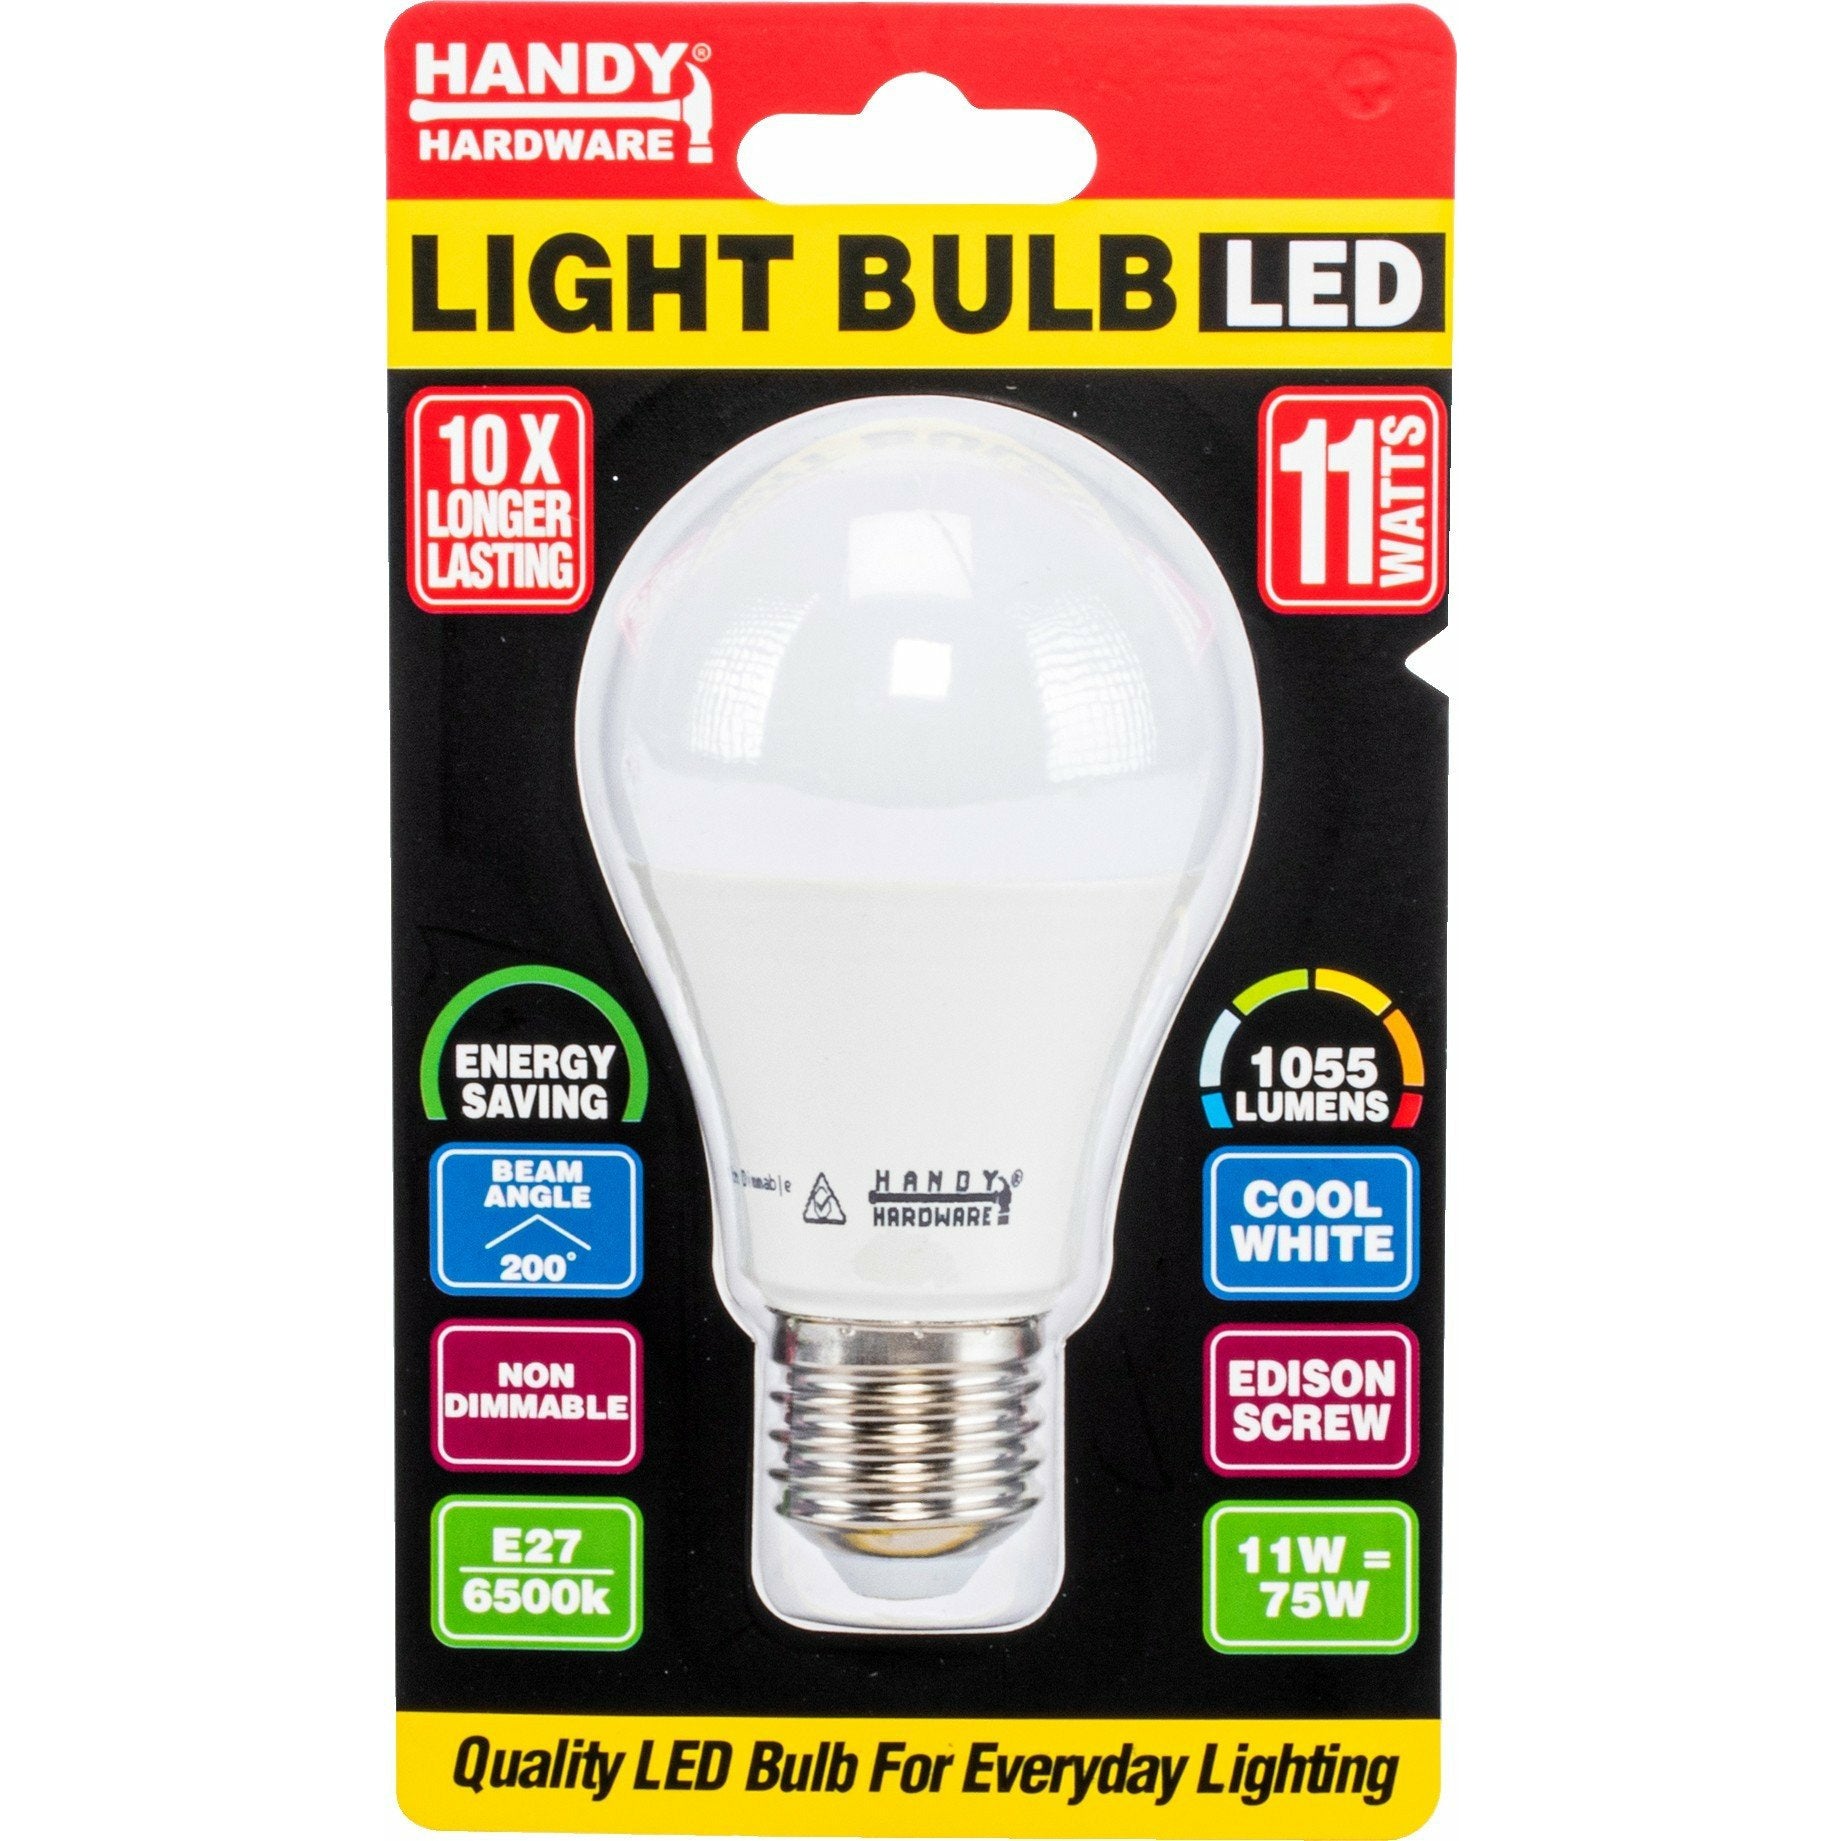 Light Bulb LED 11W Cool White - E27 Screw 1 Piece Default Title